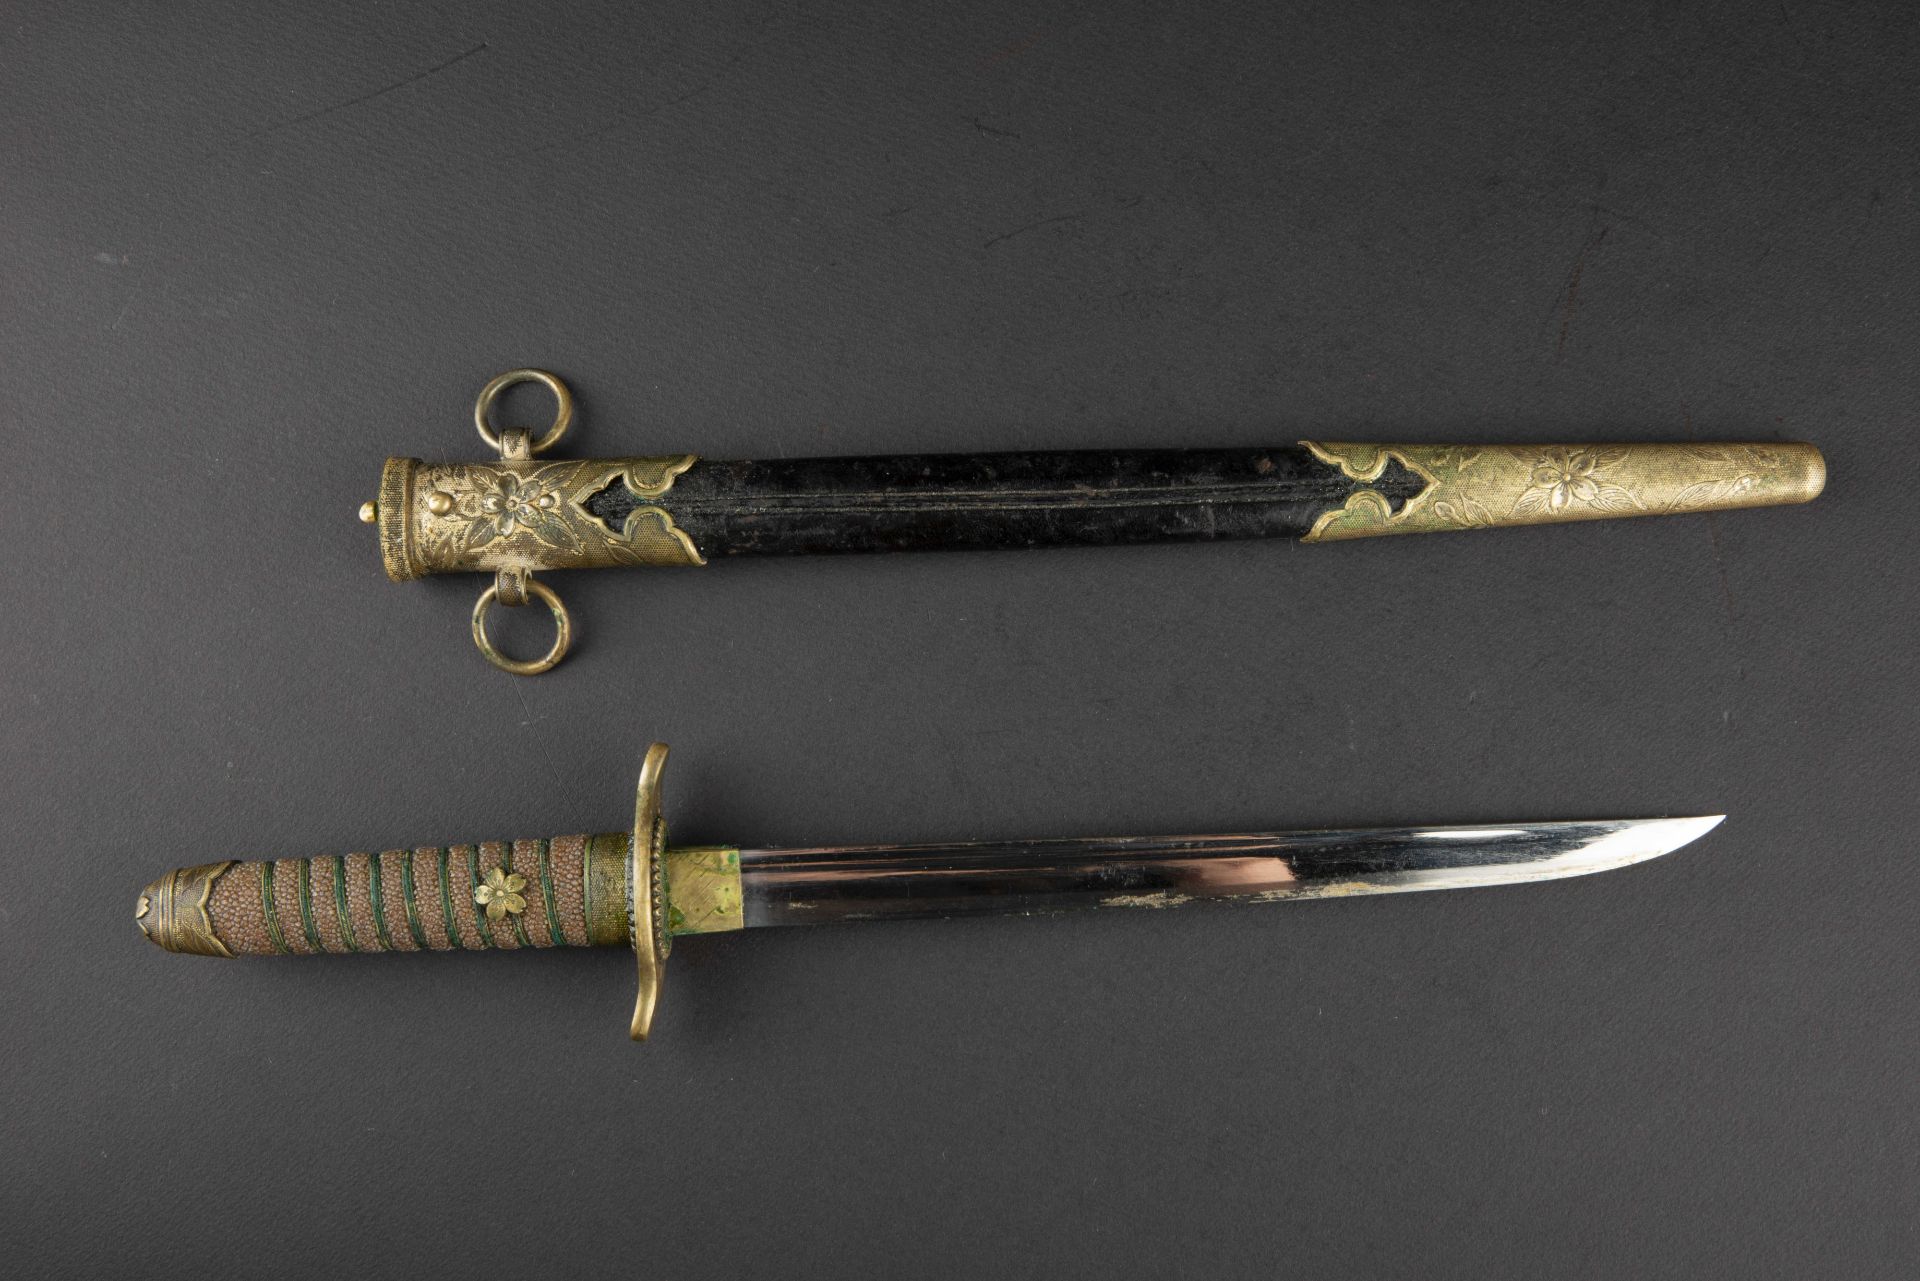 Dague officier japonais. Japanese officer dagger. - Image 2 of 4